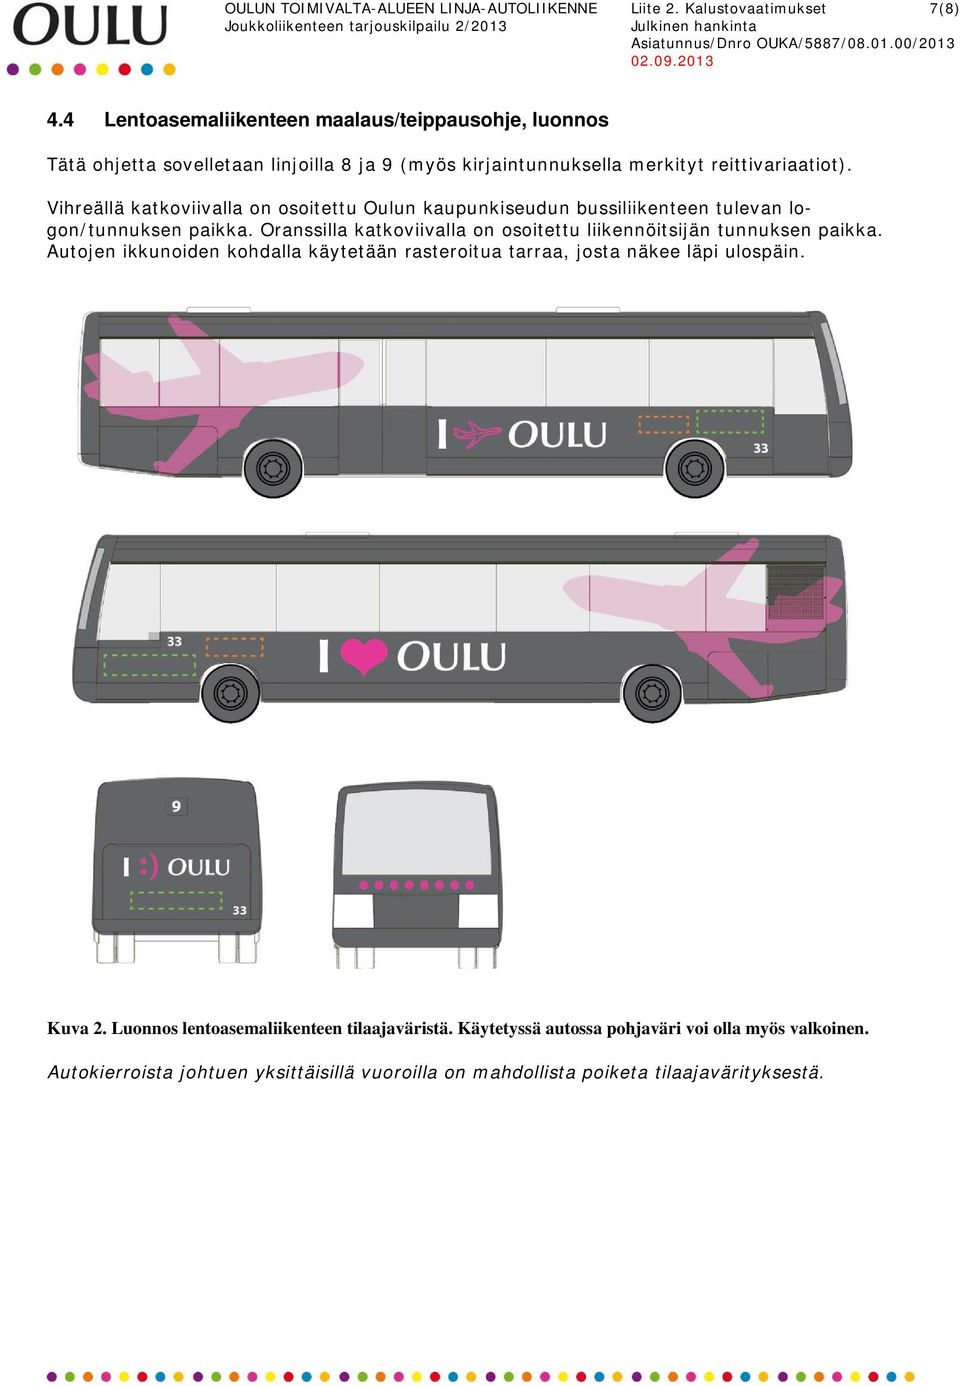 Vihreällä katkoviivalla on osoitettu Oulun kaupunkiseudun bussiliikenteen tulevan logon/tunnuksen paikka.